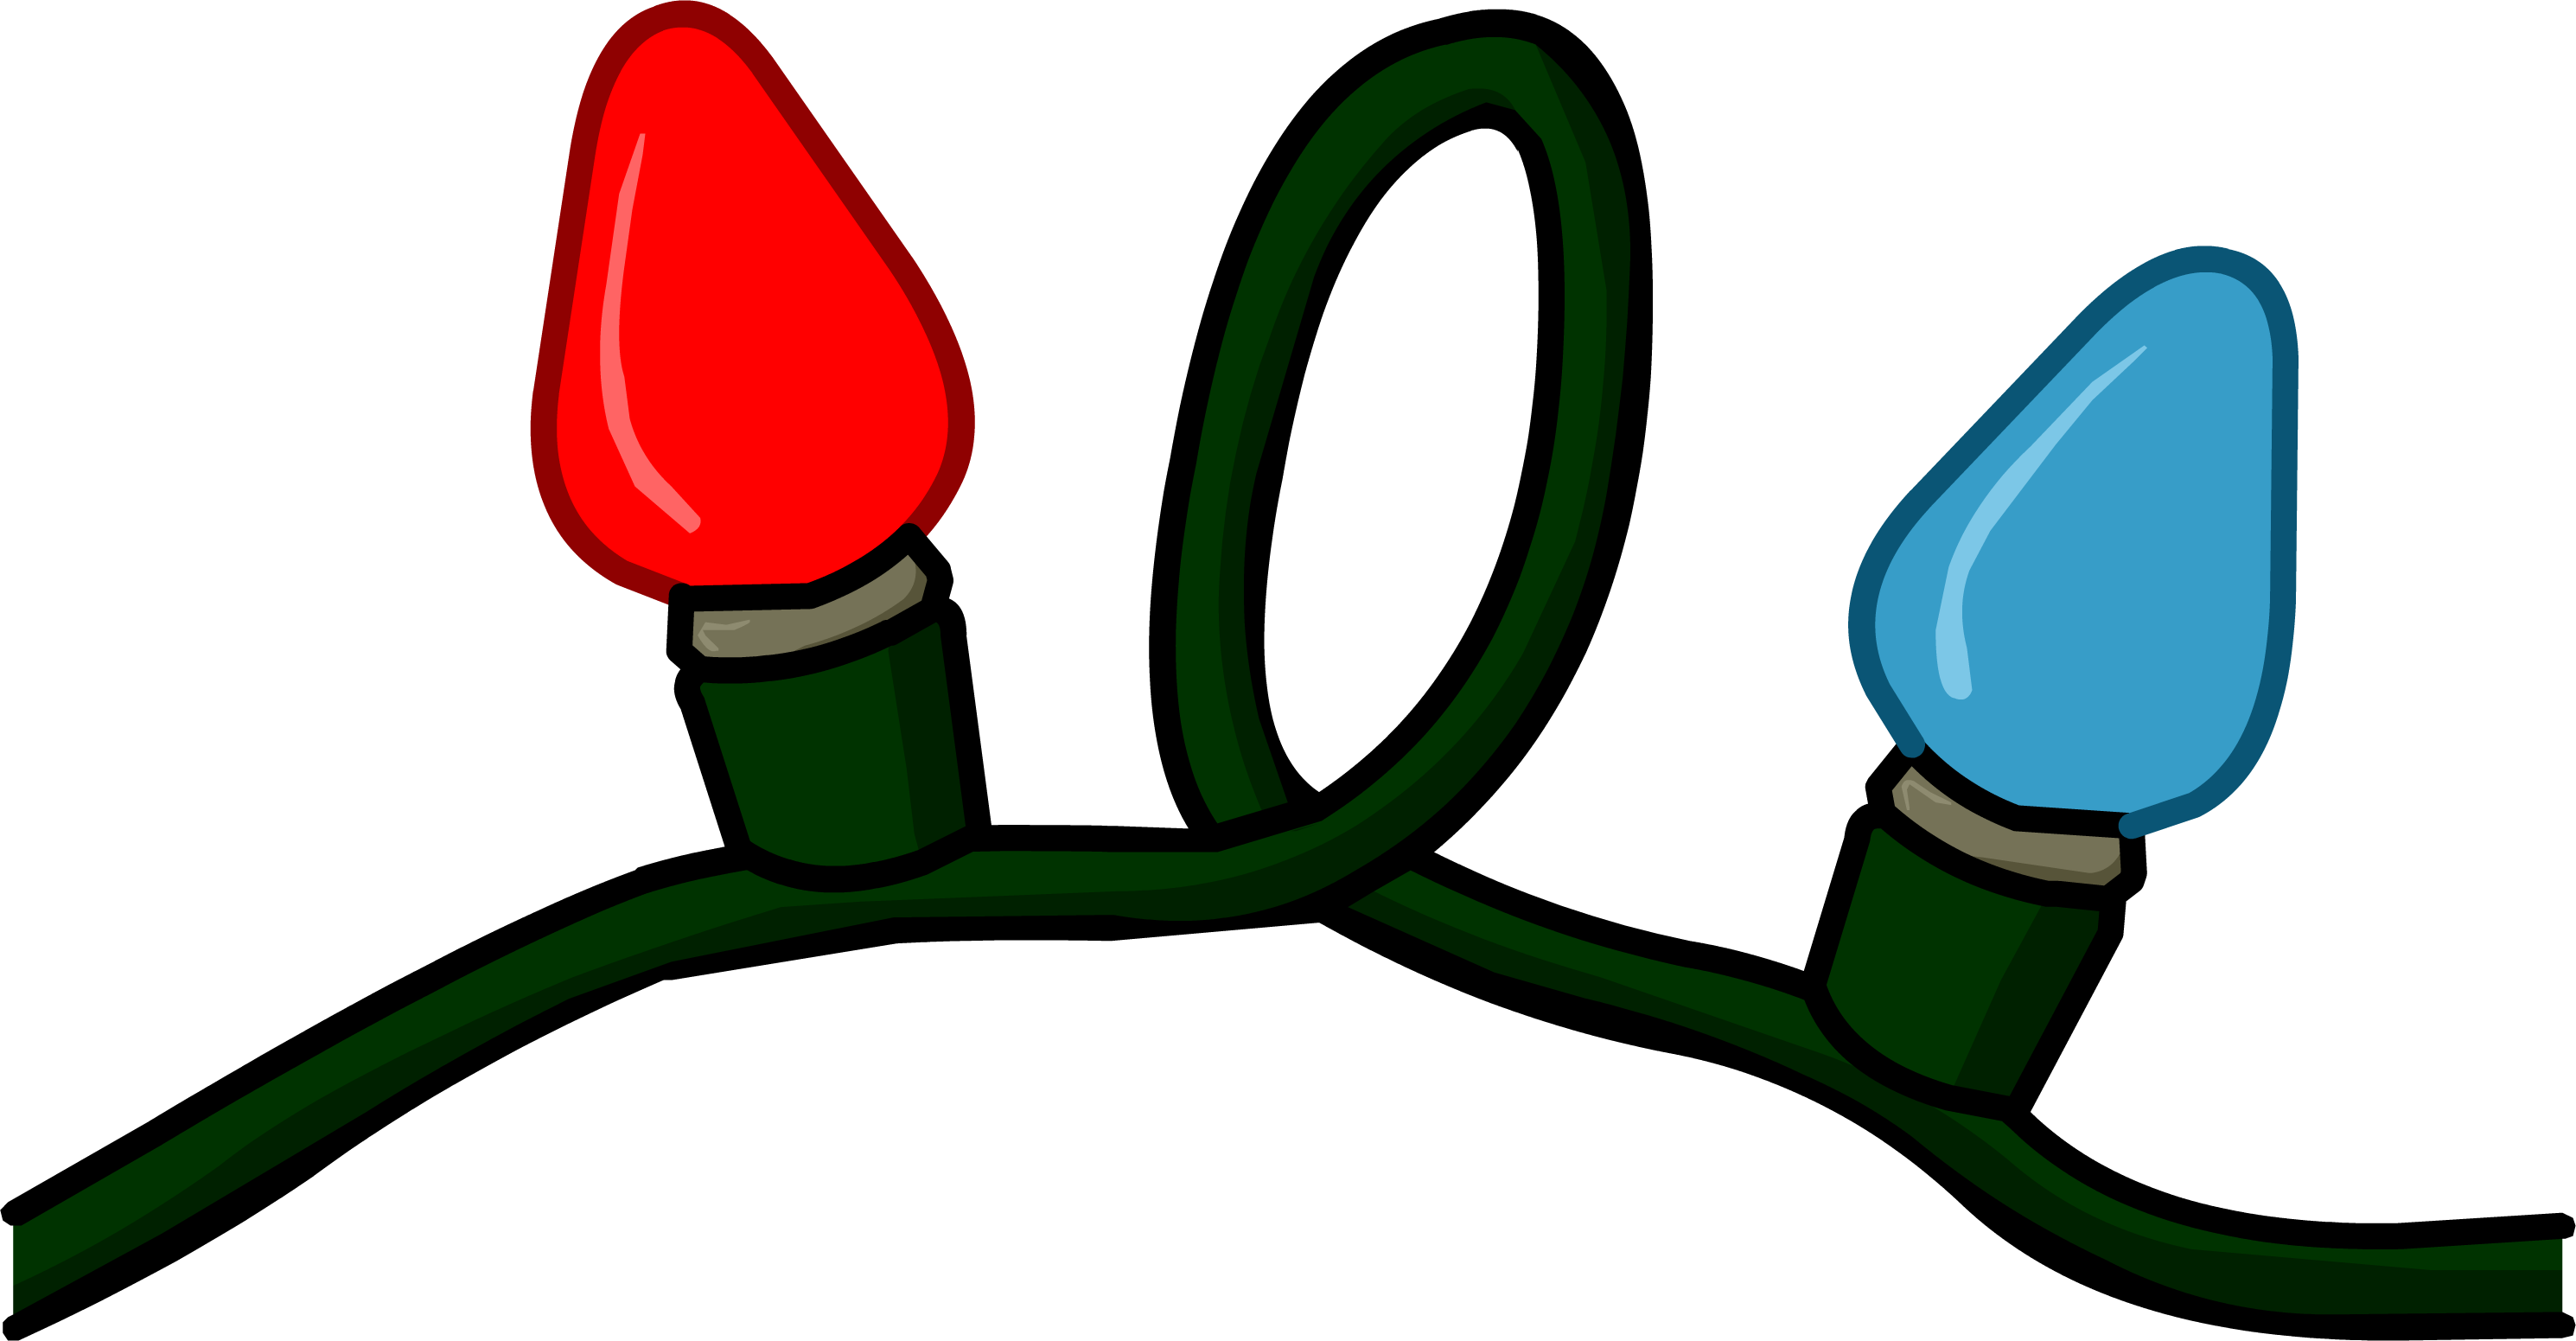 Graphics For Christmas Lights Animated Graphics - Club Penguin Christmas Lights (2980x1551)